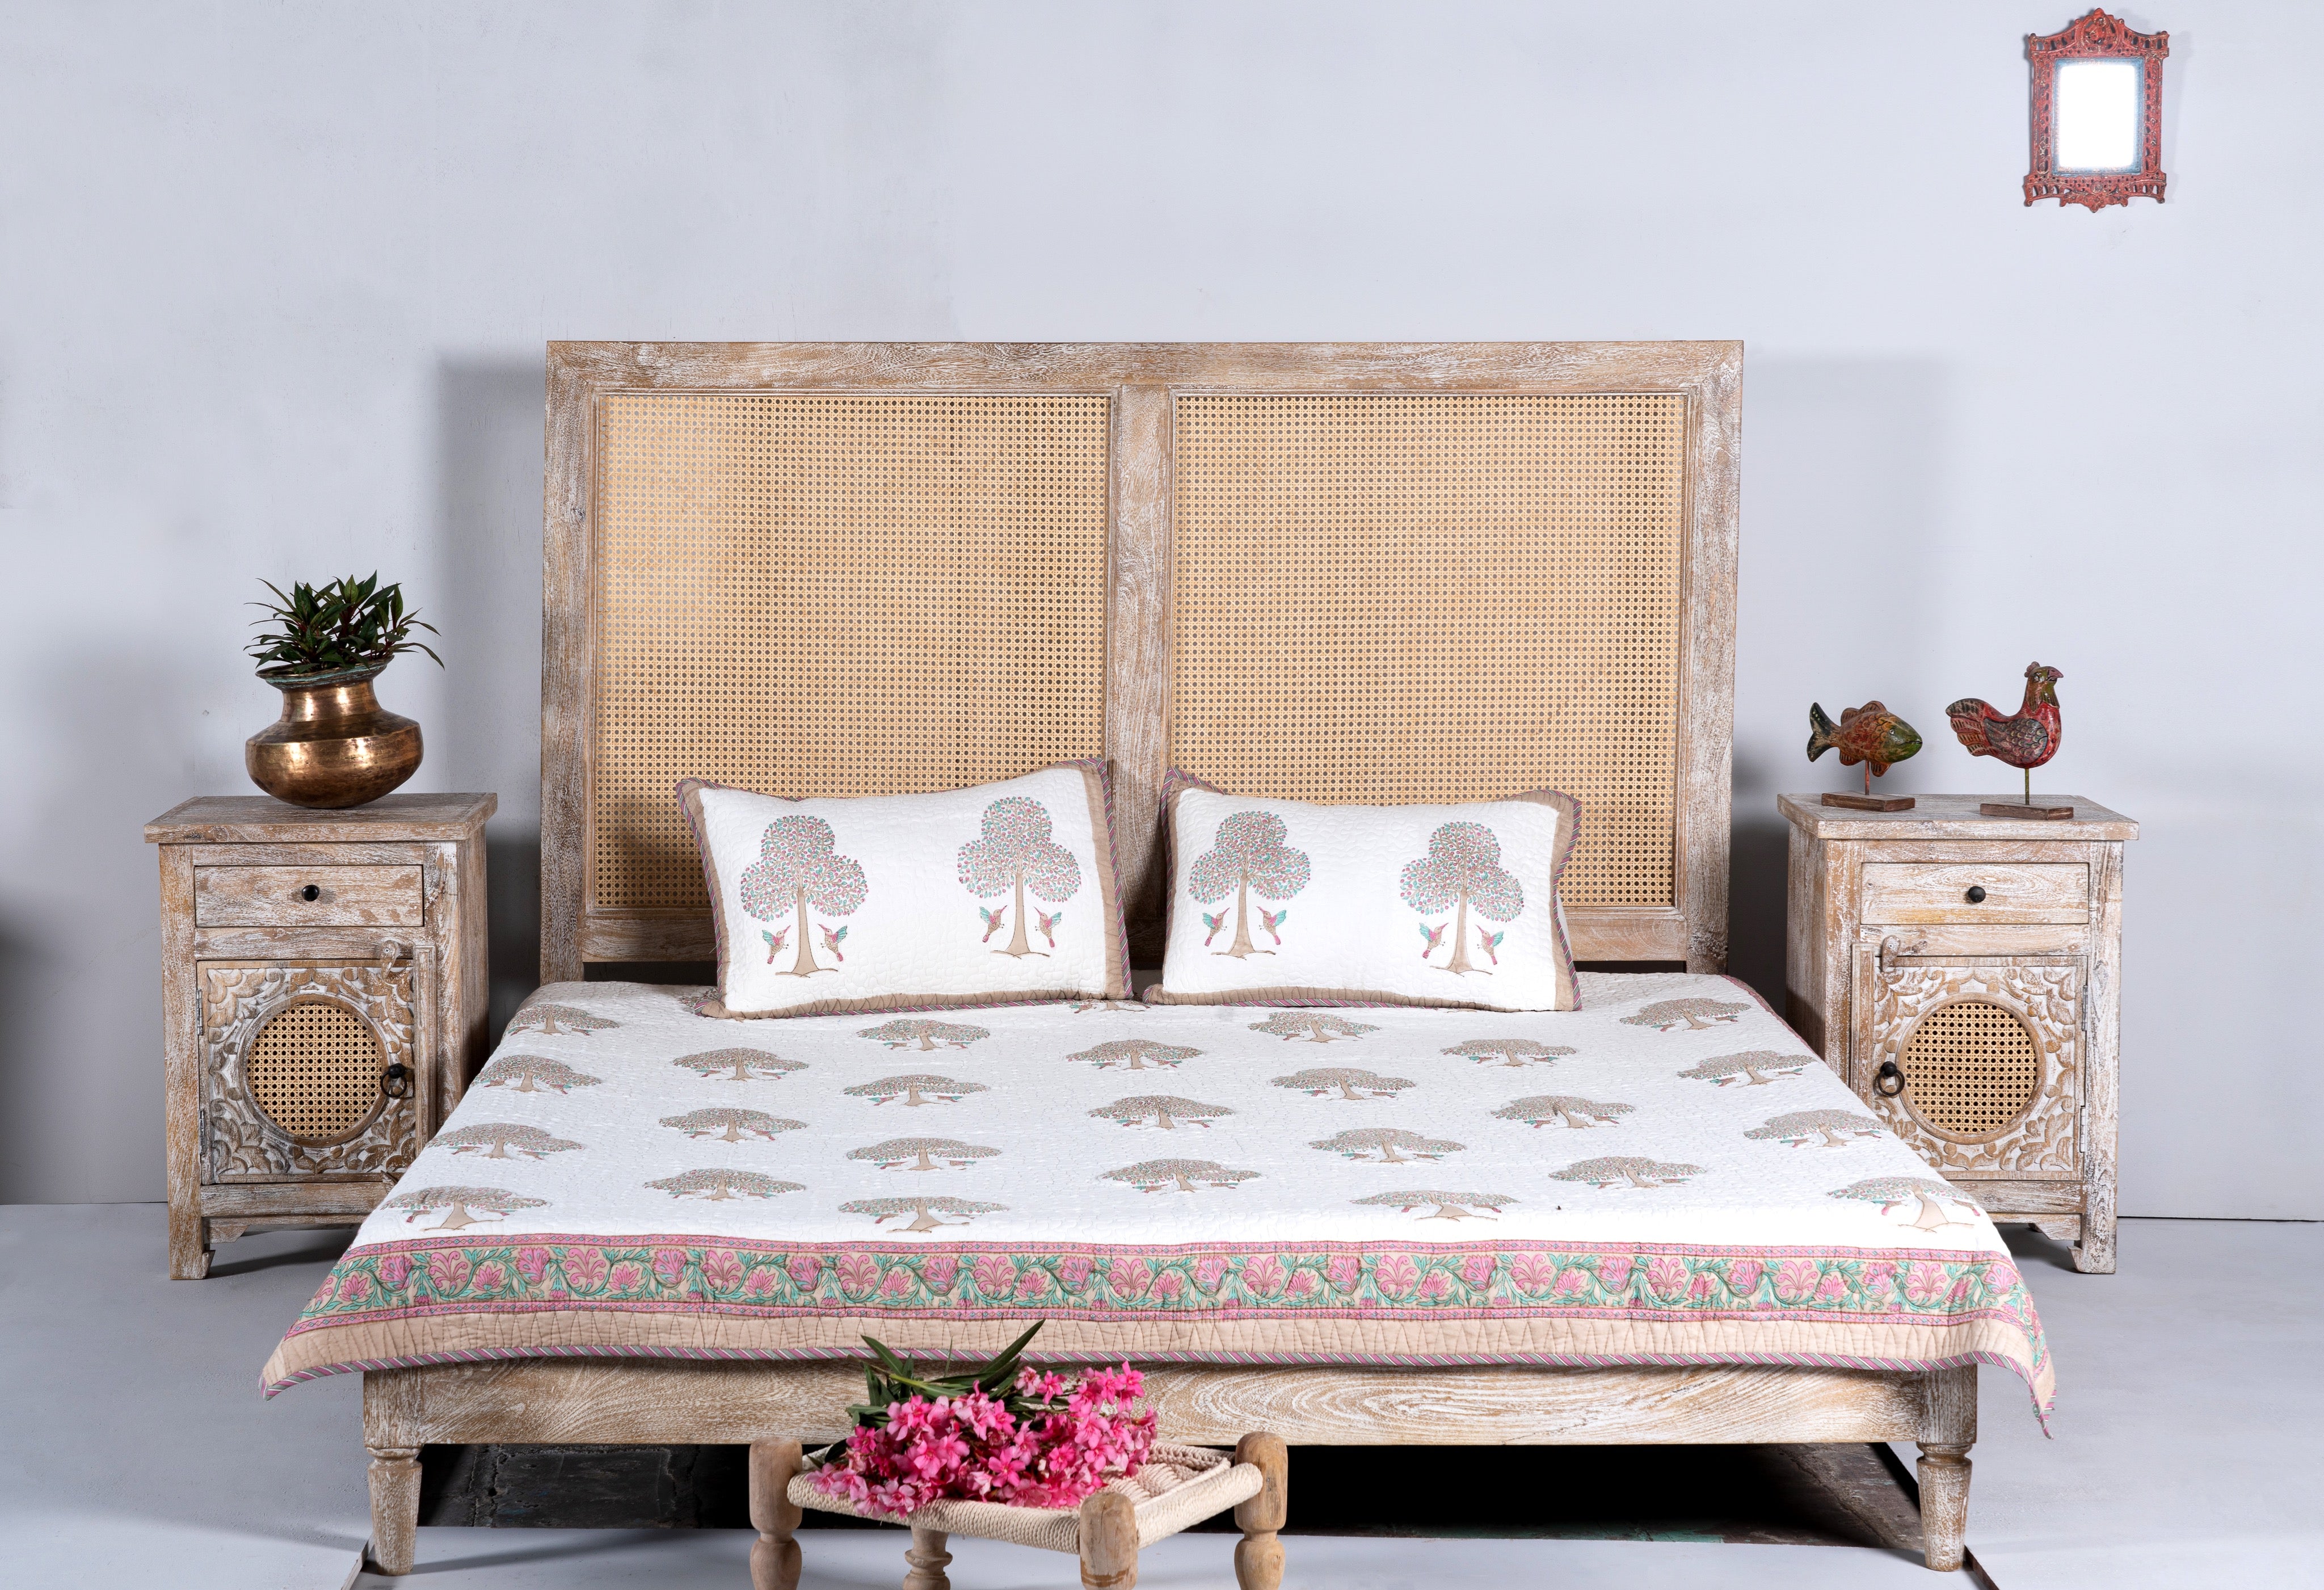 Jhelum, set of 2 antique bedside tables